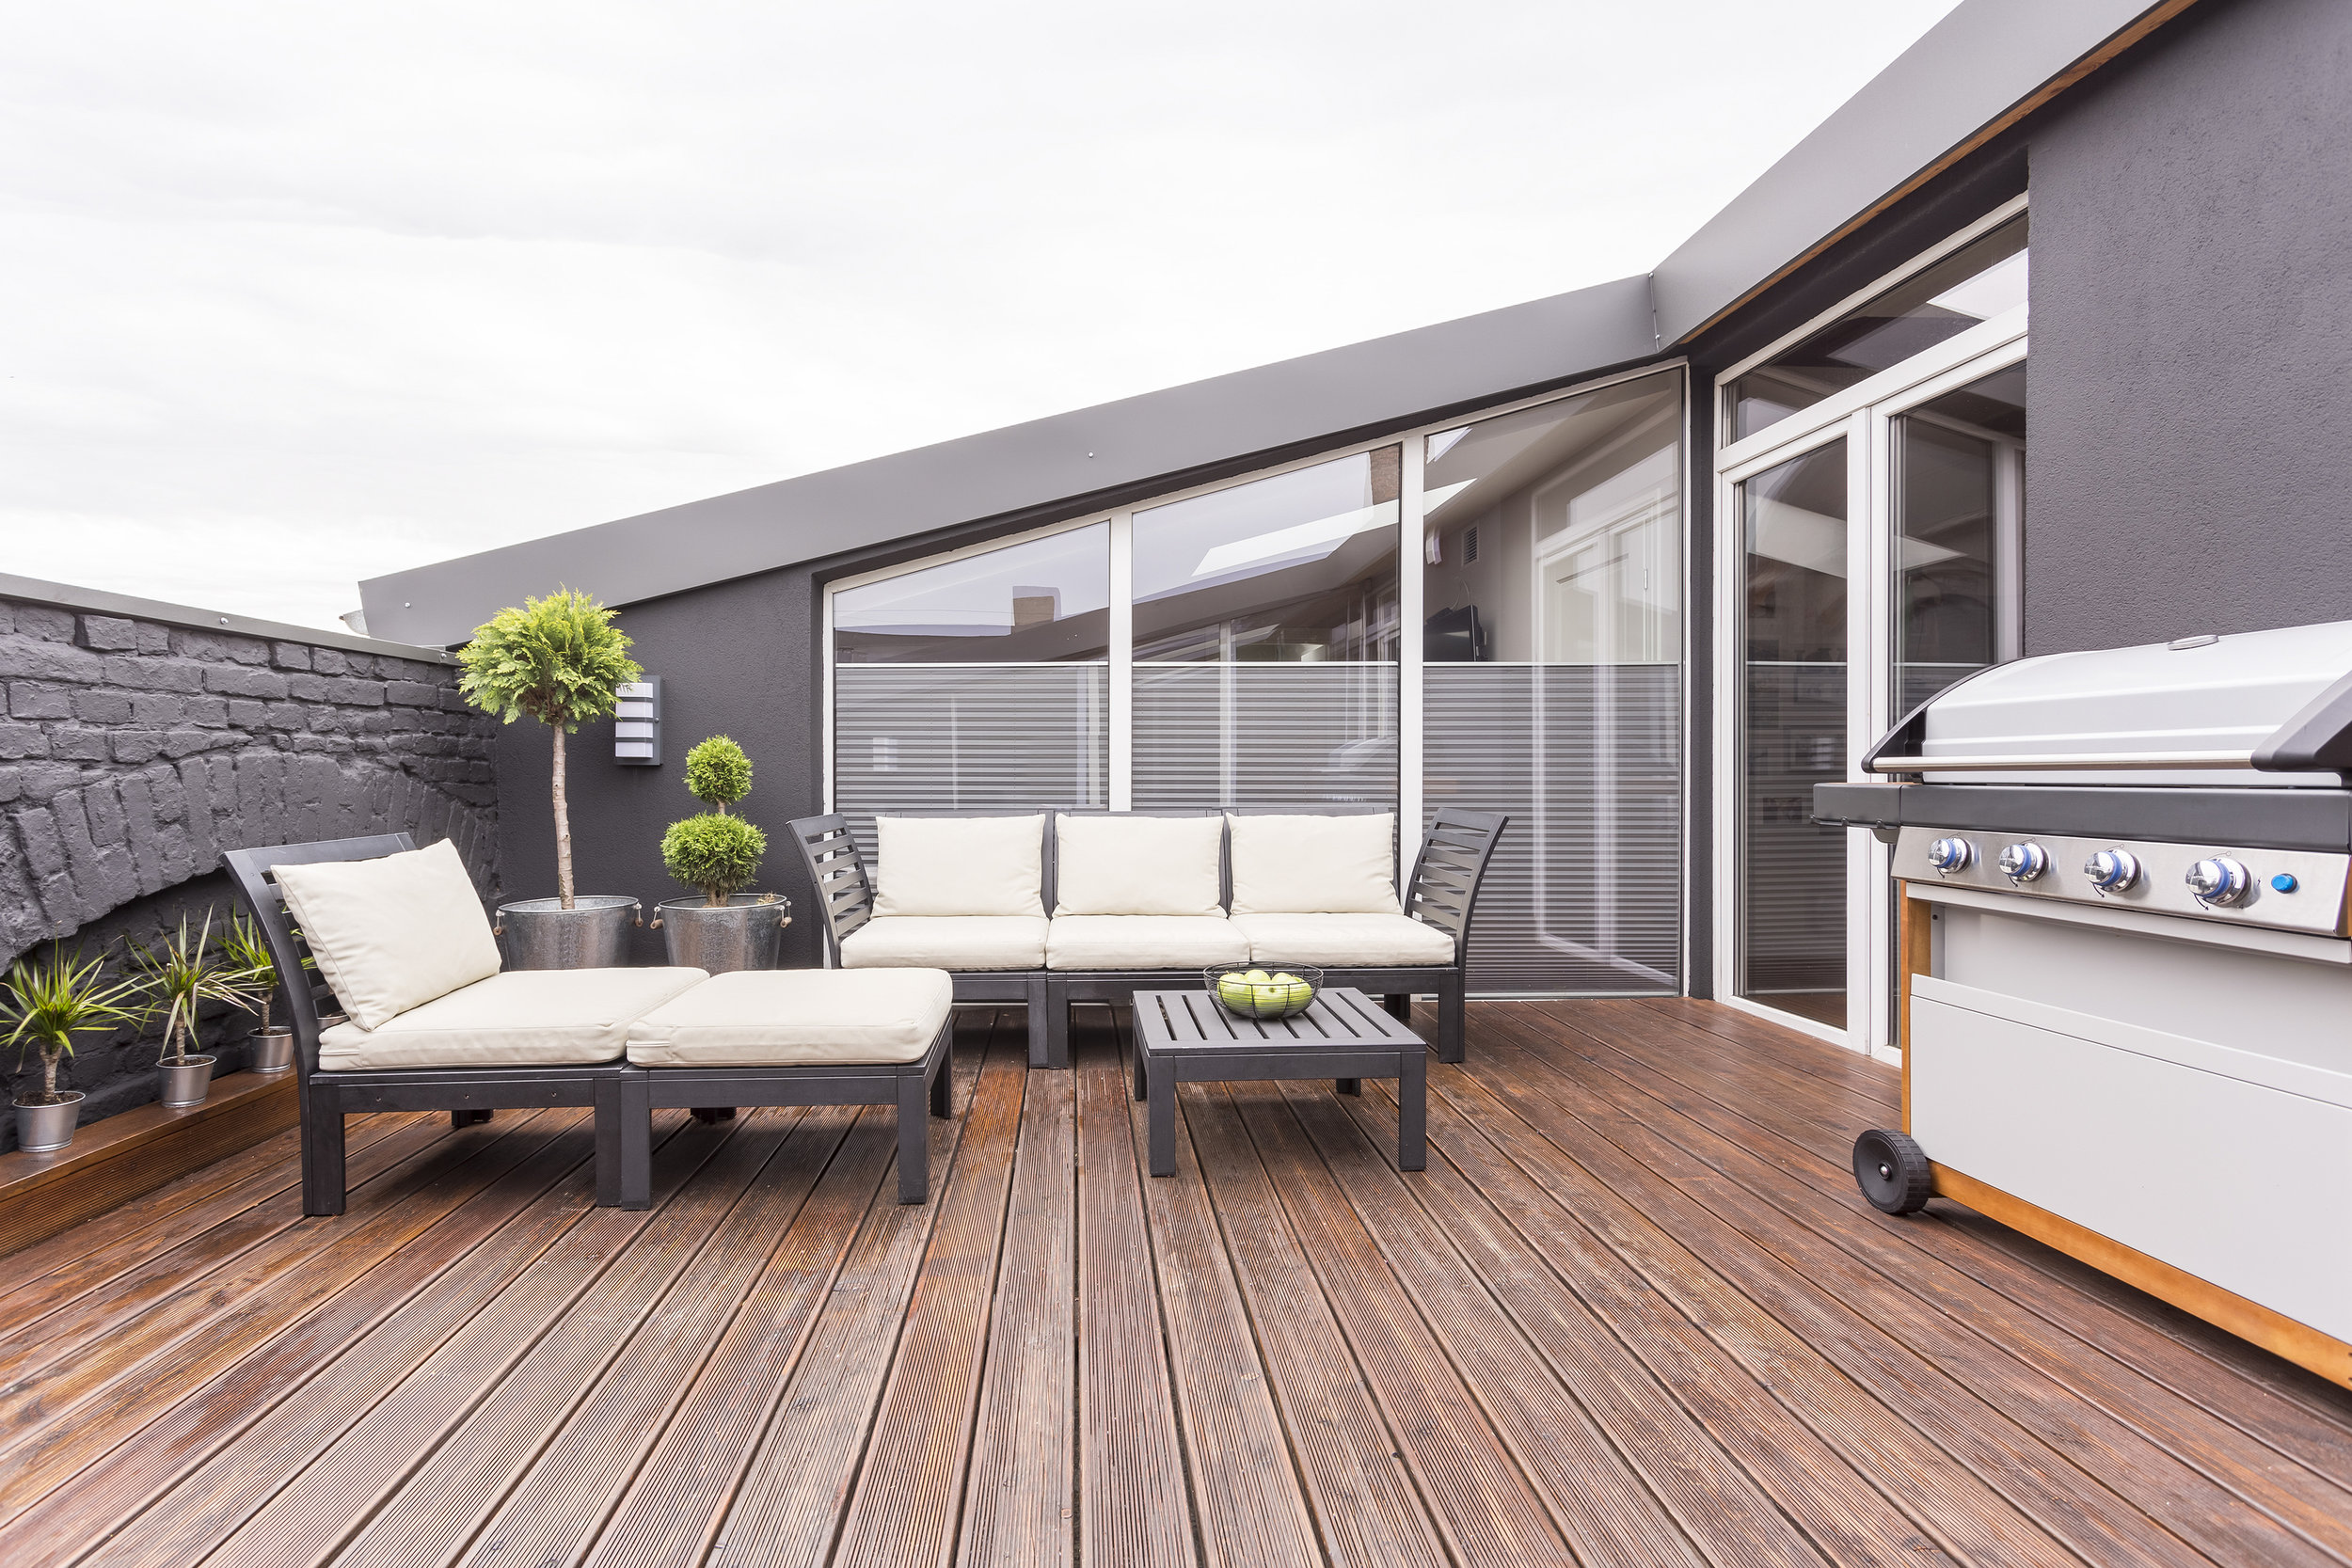 bigstock-Cozy-Terrace-With-Wooden-Floor-214490812.jpg